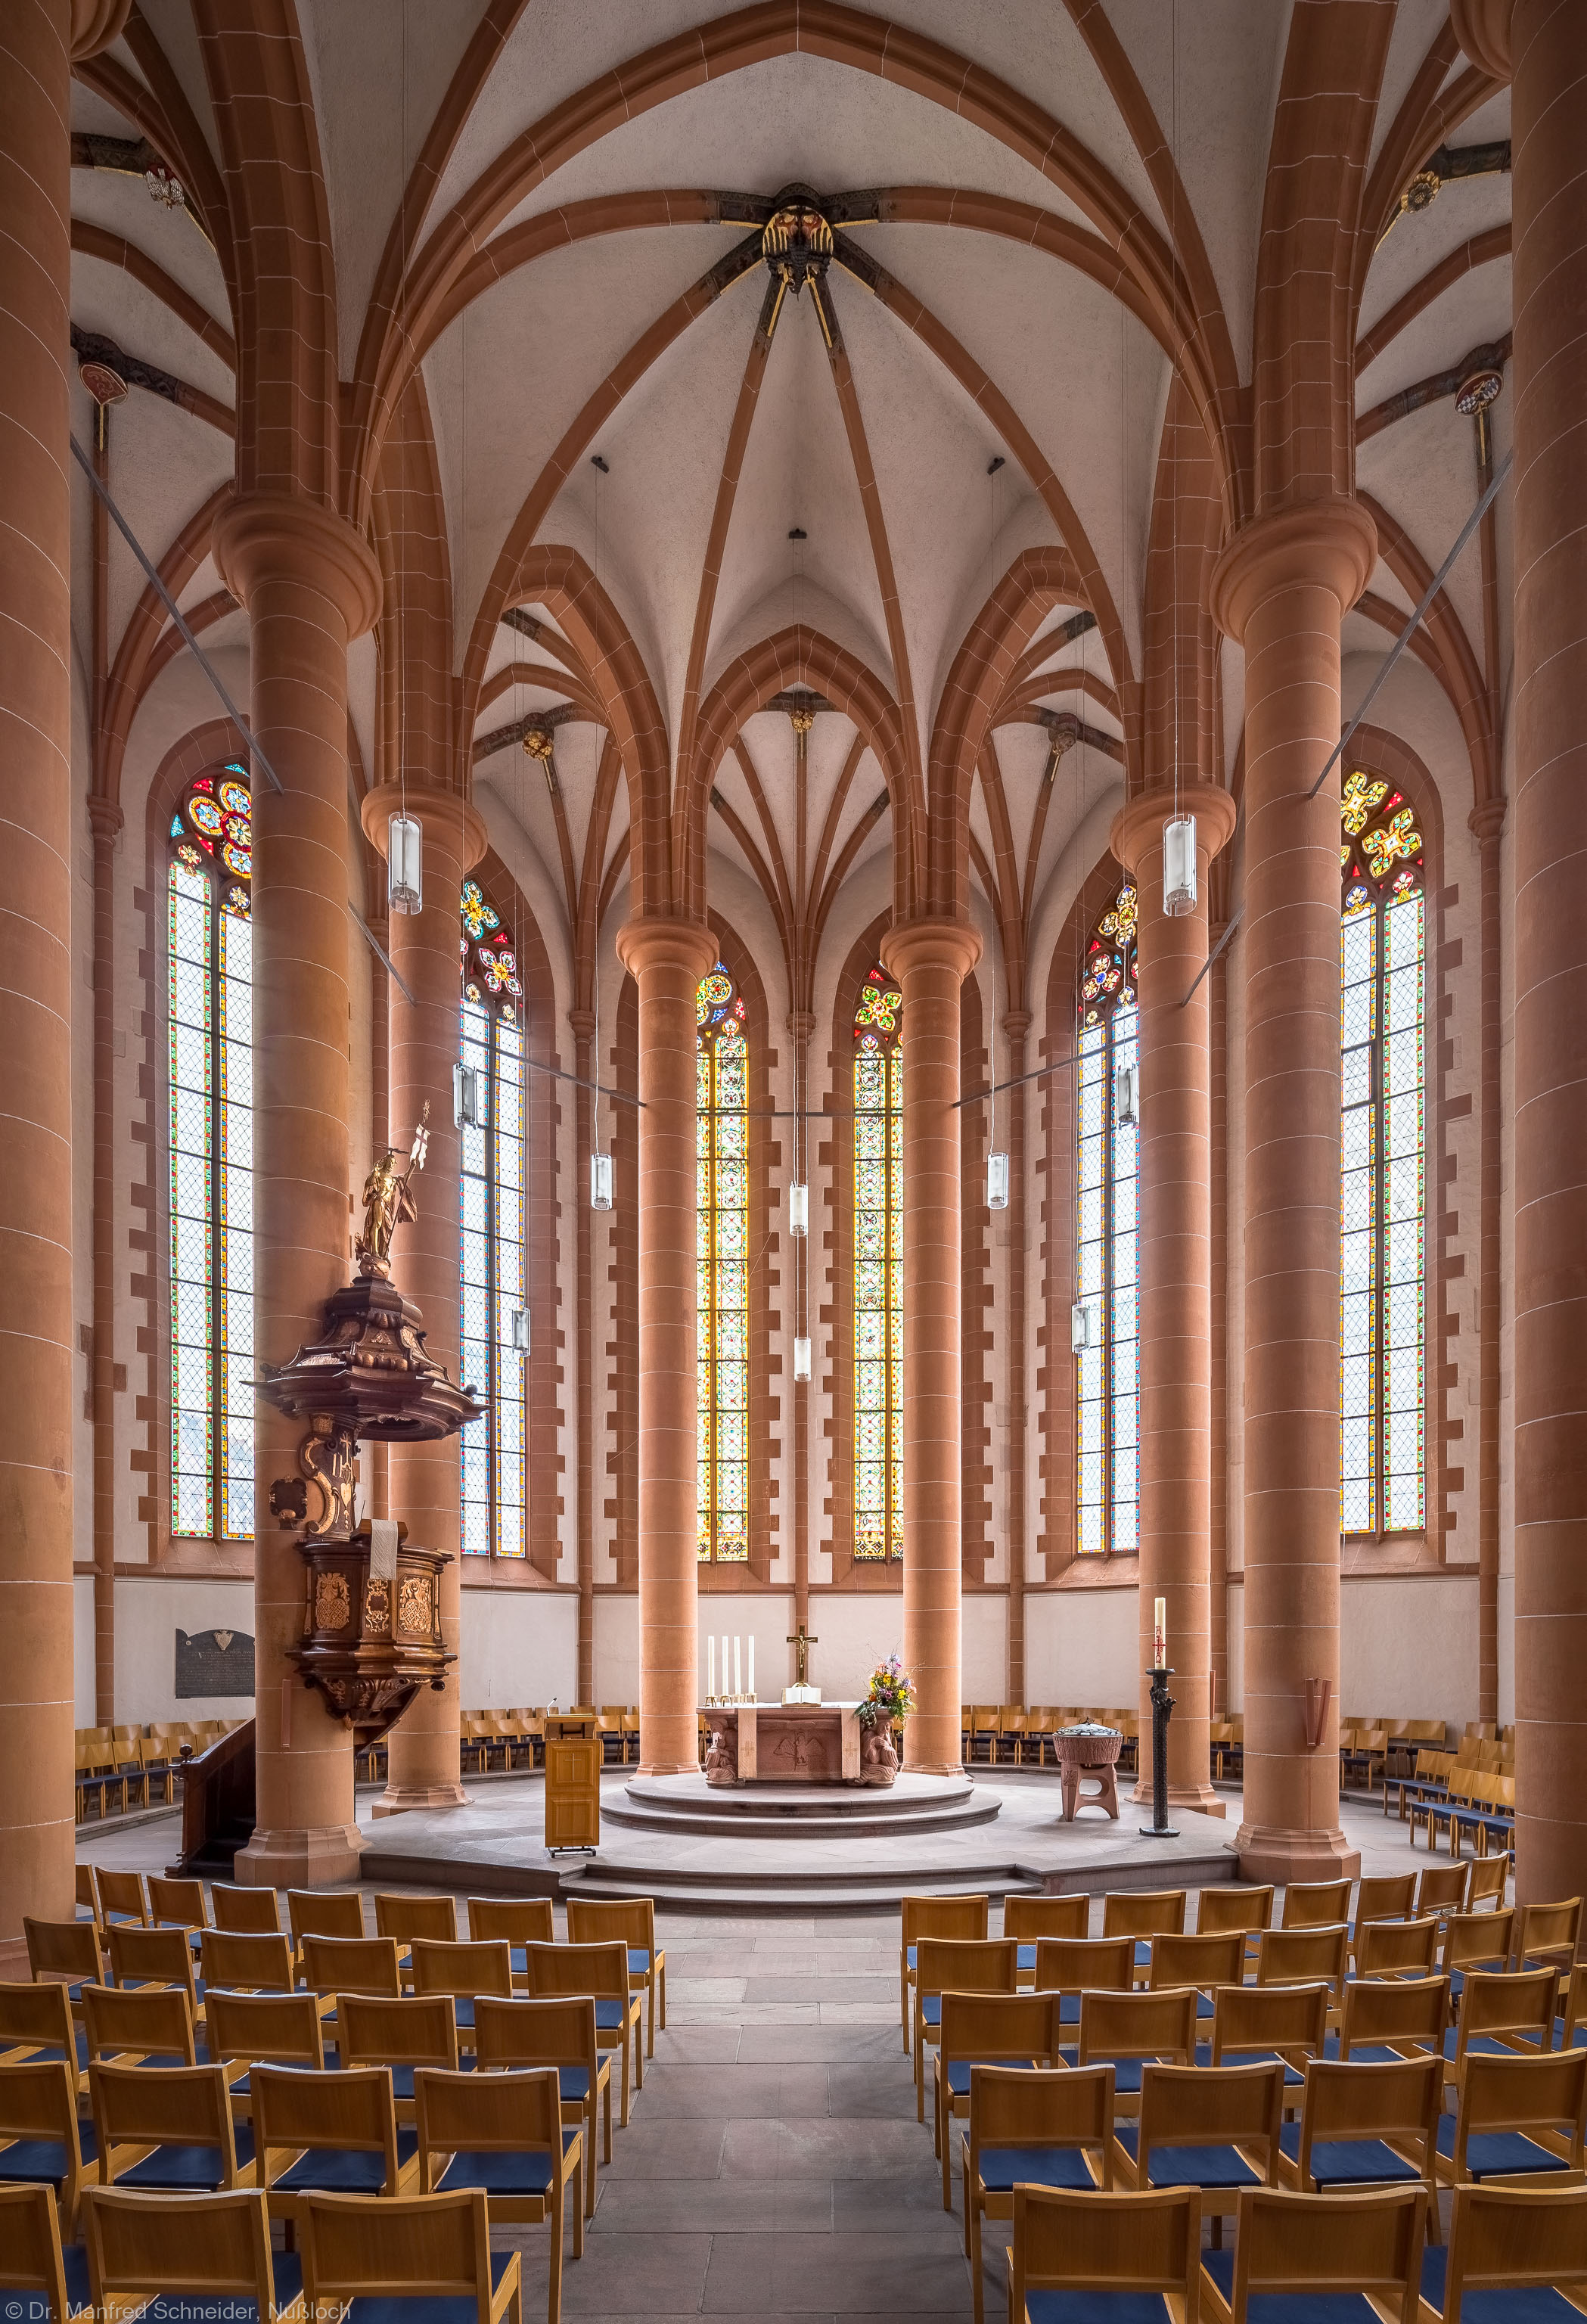 Heidelberg - Heiliggeistkirche - Chor - Blick in den Chor mit Säulen, Gewölbe, Kanzel und Altar (aufgenommen im April 2013, am späten Vormittag)